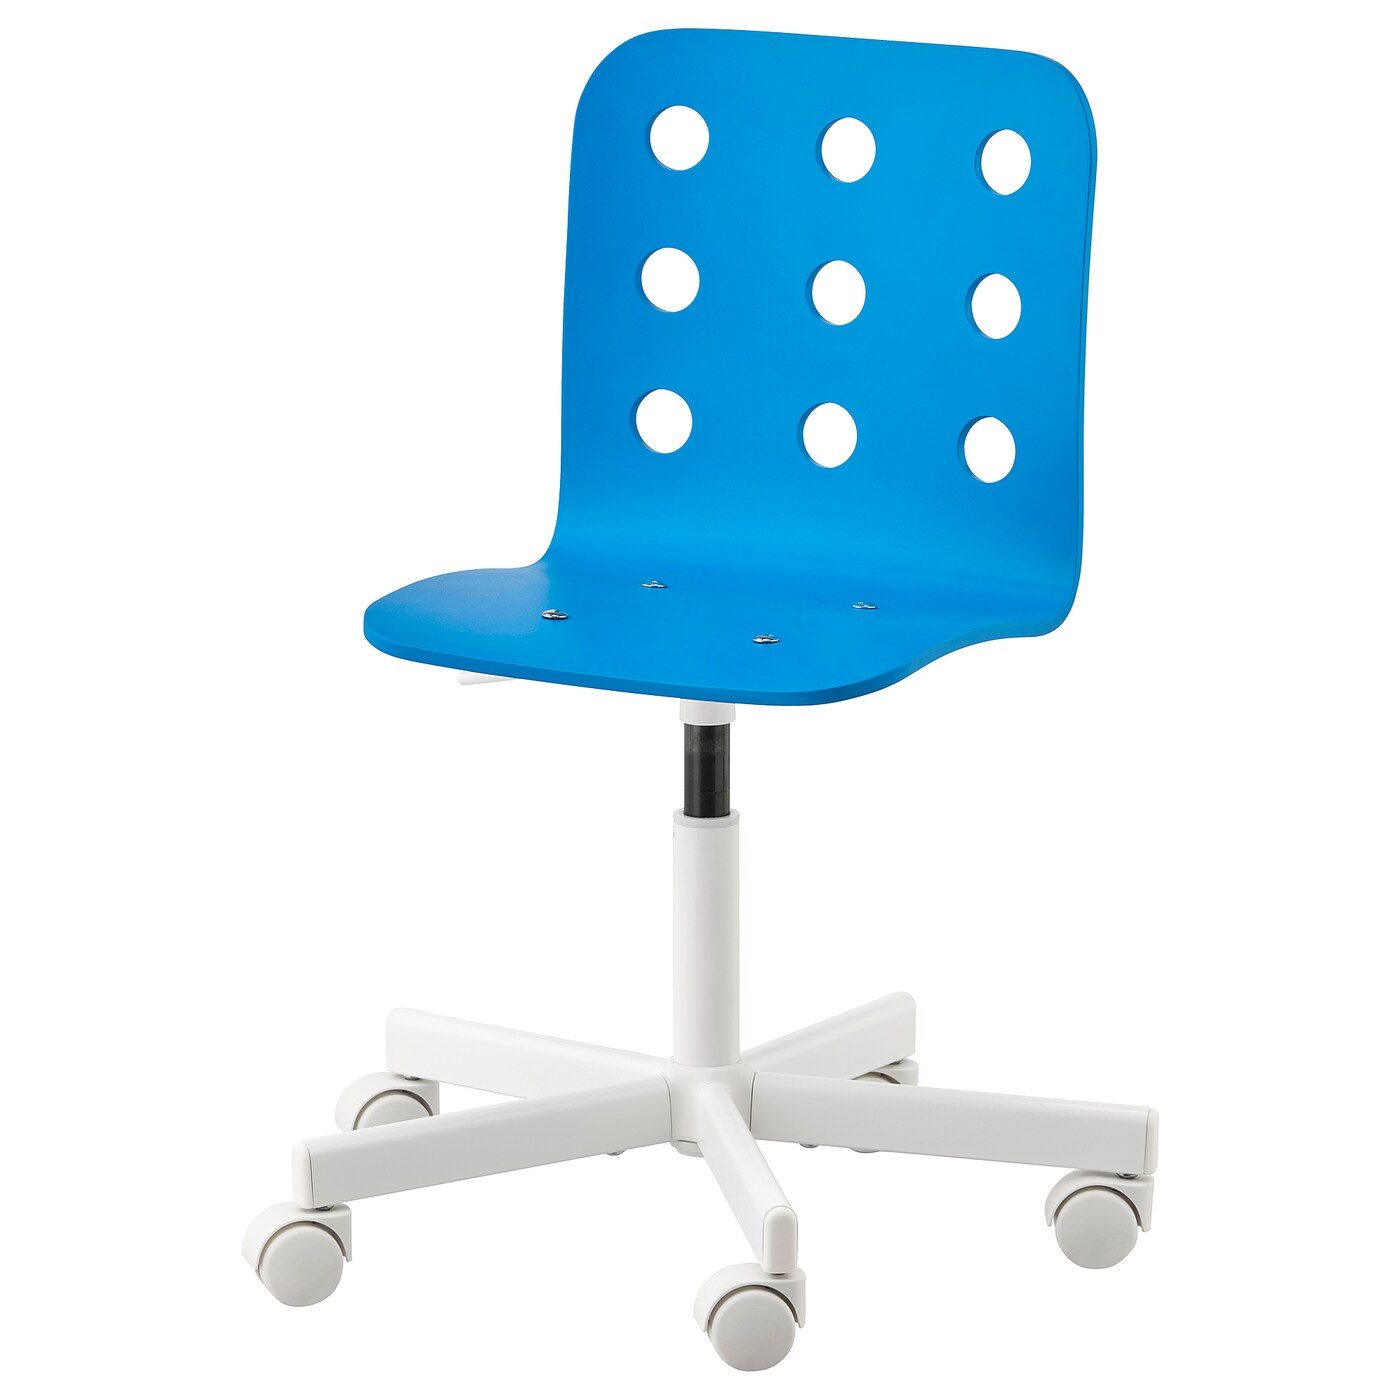 Afstoten kroeg Bestuiven JULES Child's desk chair blue, white - IKEAPEDIA